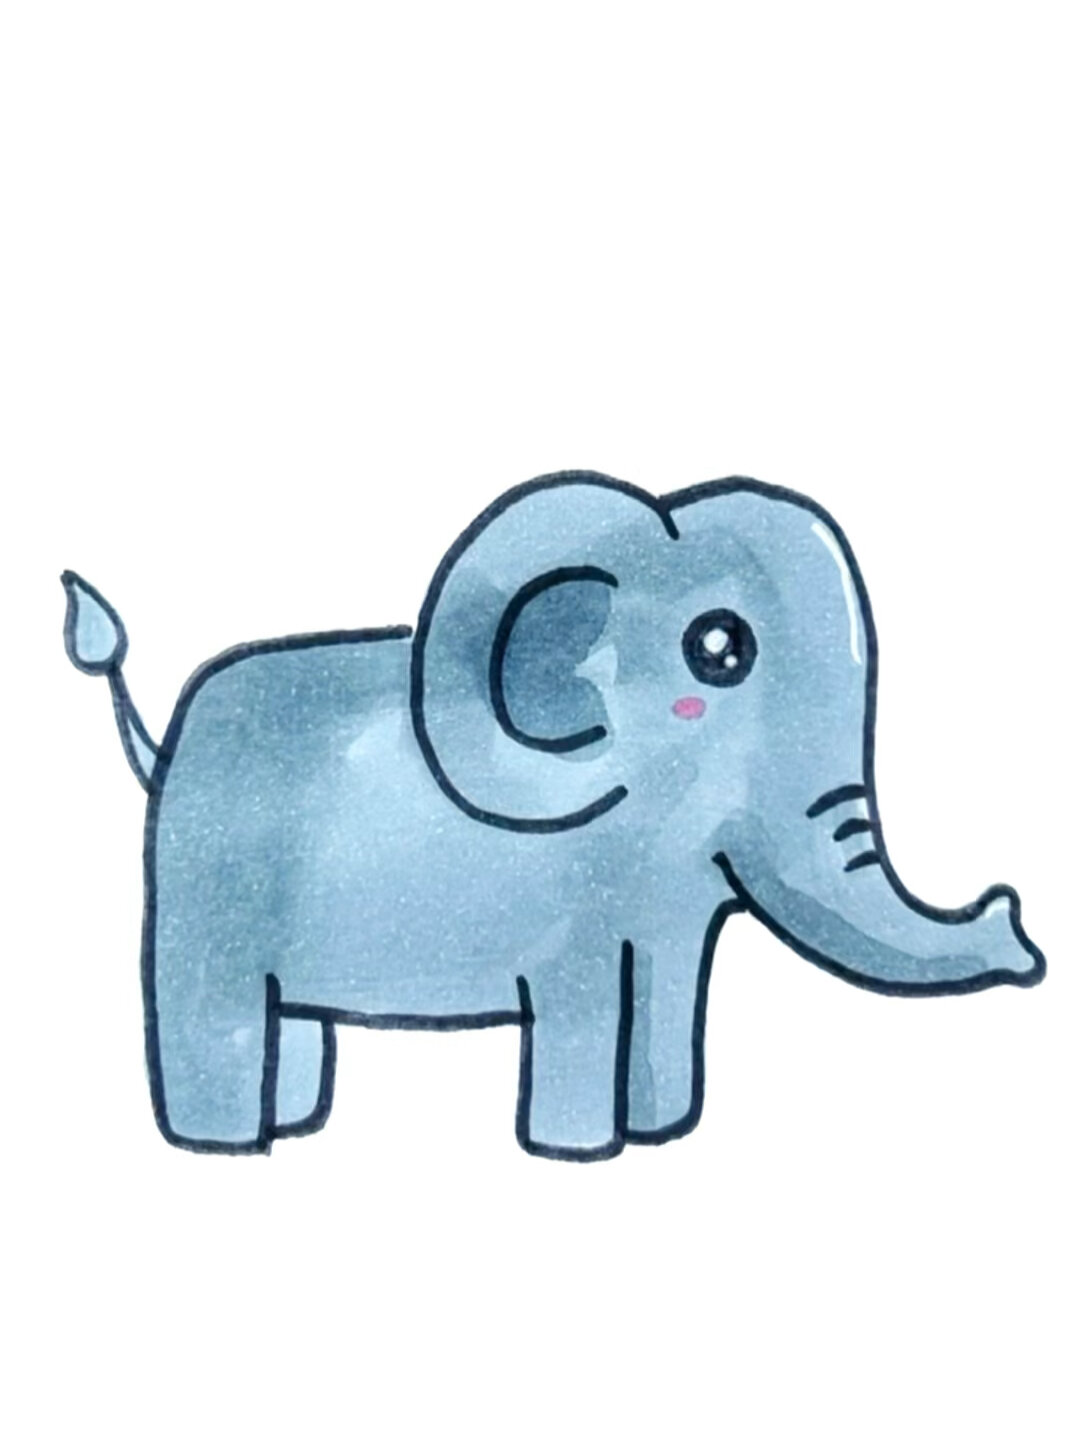 大象的尾巴怎么画?图片